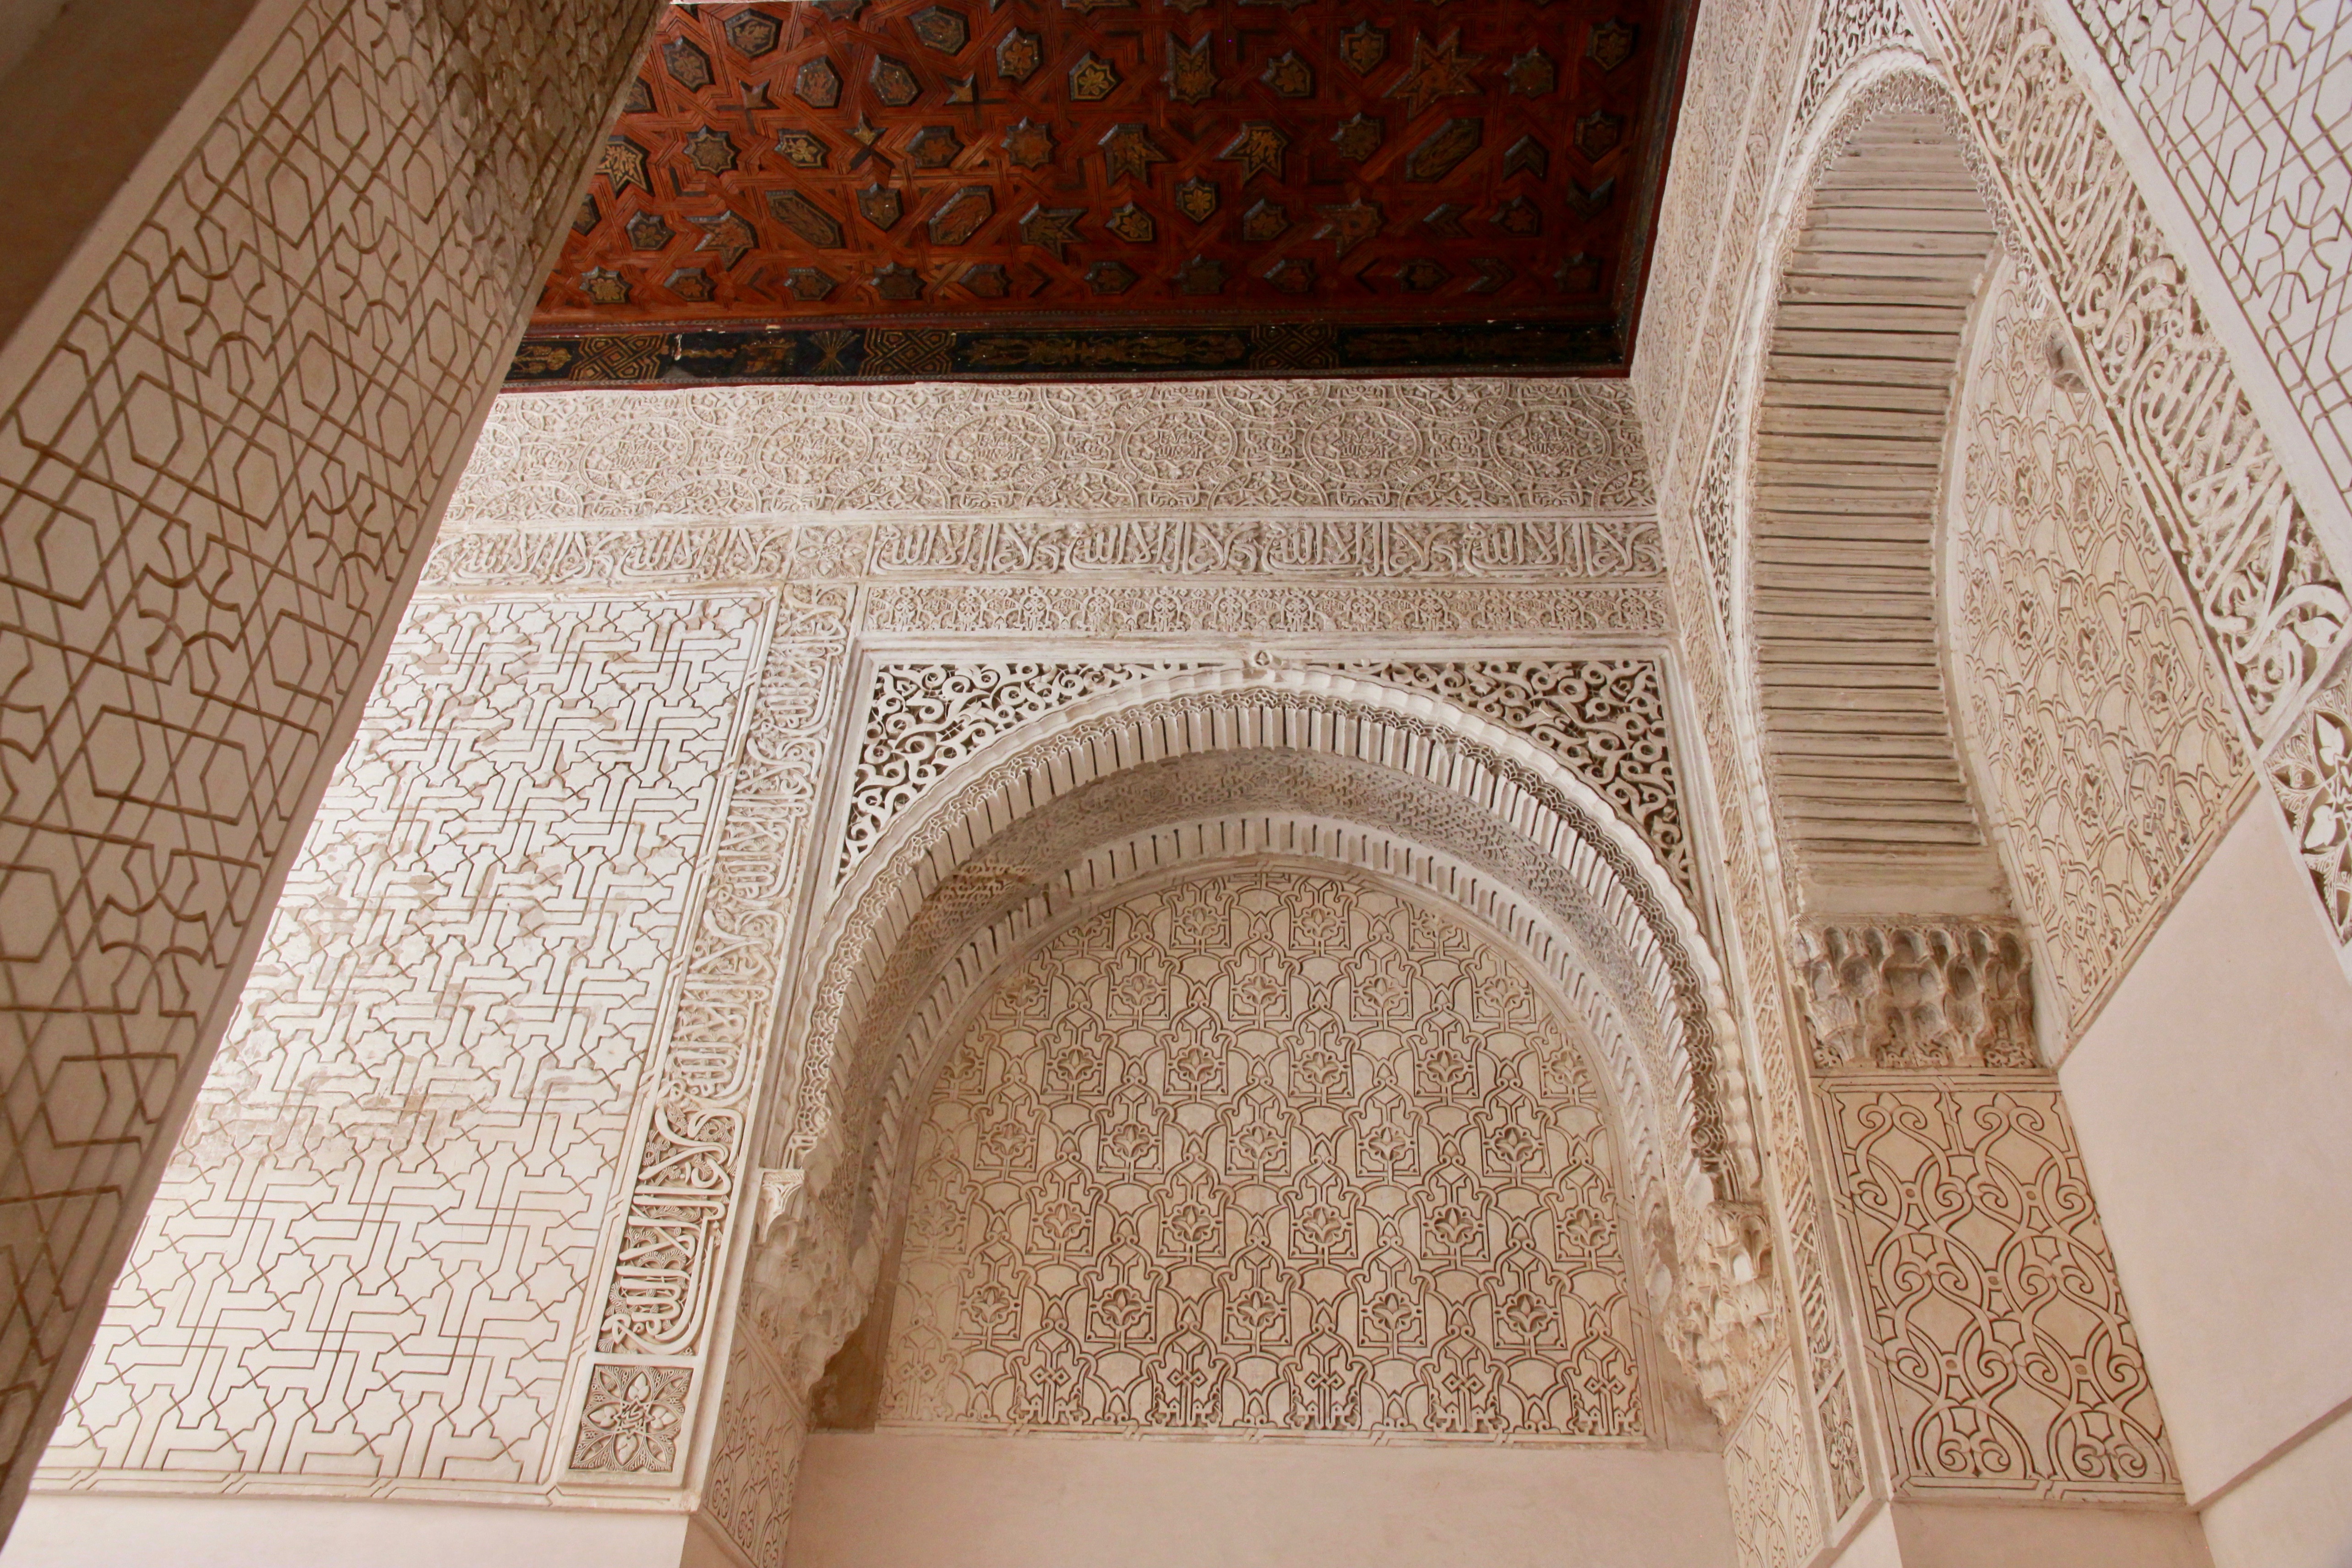 consigli per visitare l'Alhambra di Granada